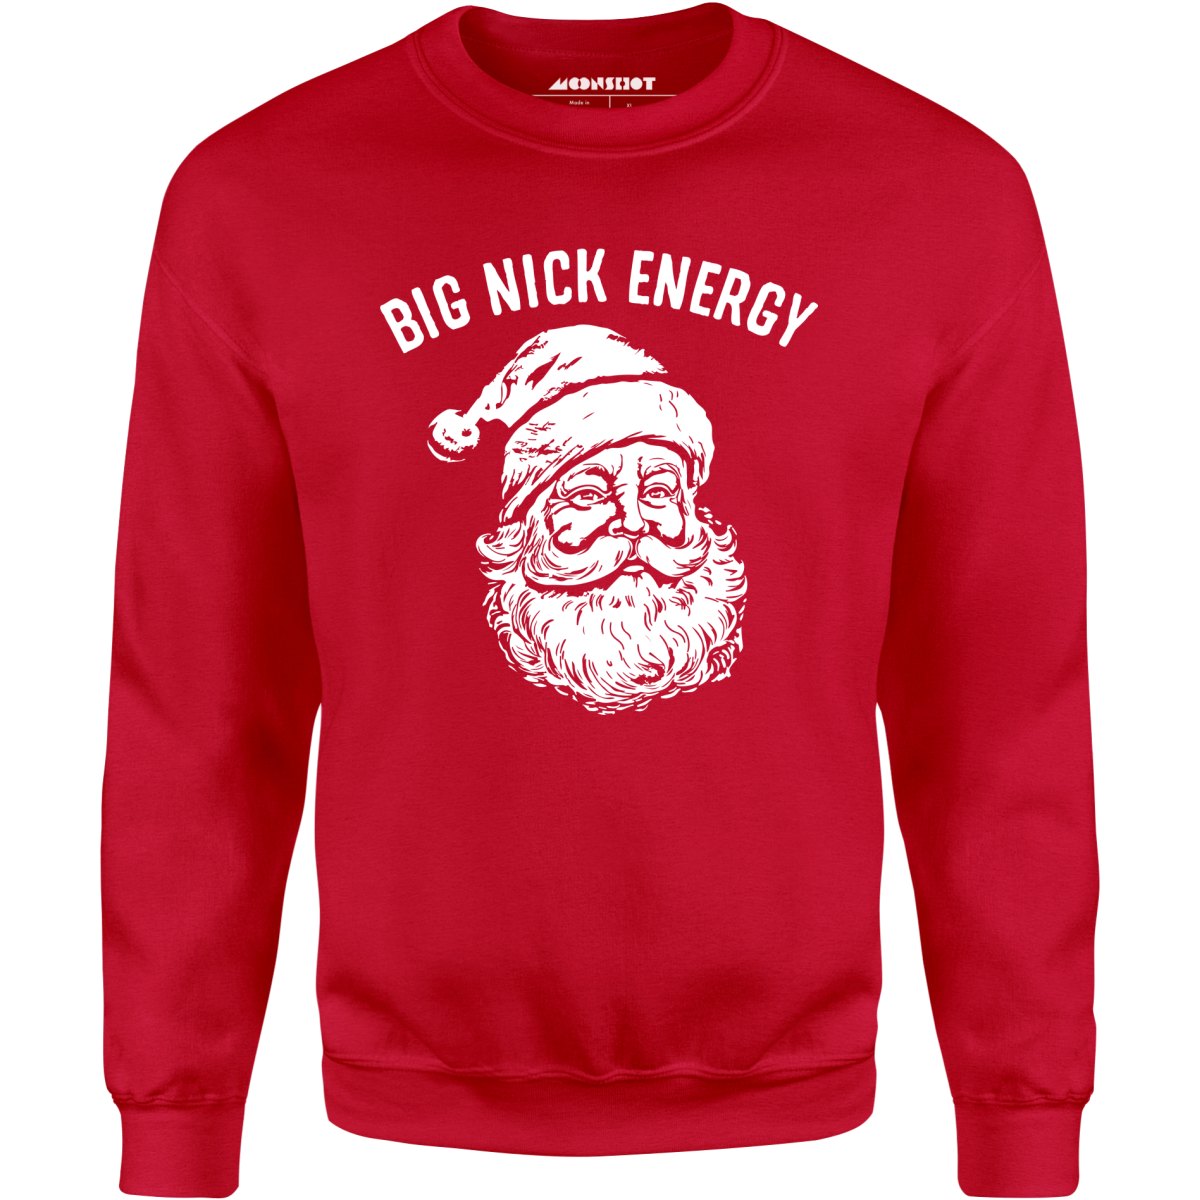 Big Nick Energy - Unisex Sweatshirt